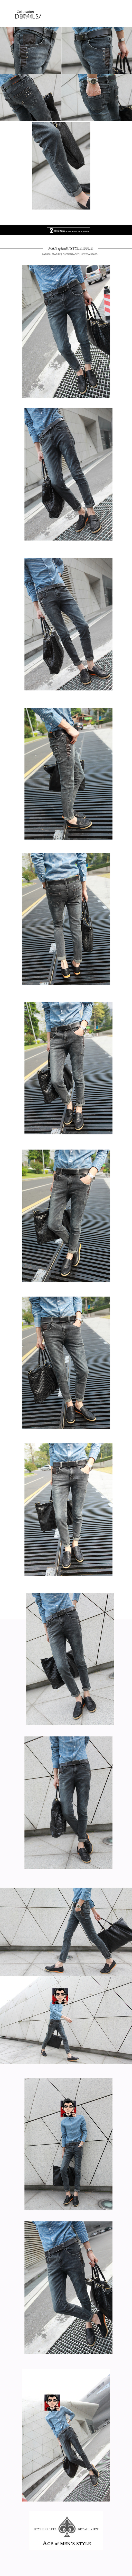 mssefn 2014新款 时尚百搭个性潮修身小脚牛仔裤2098-A20